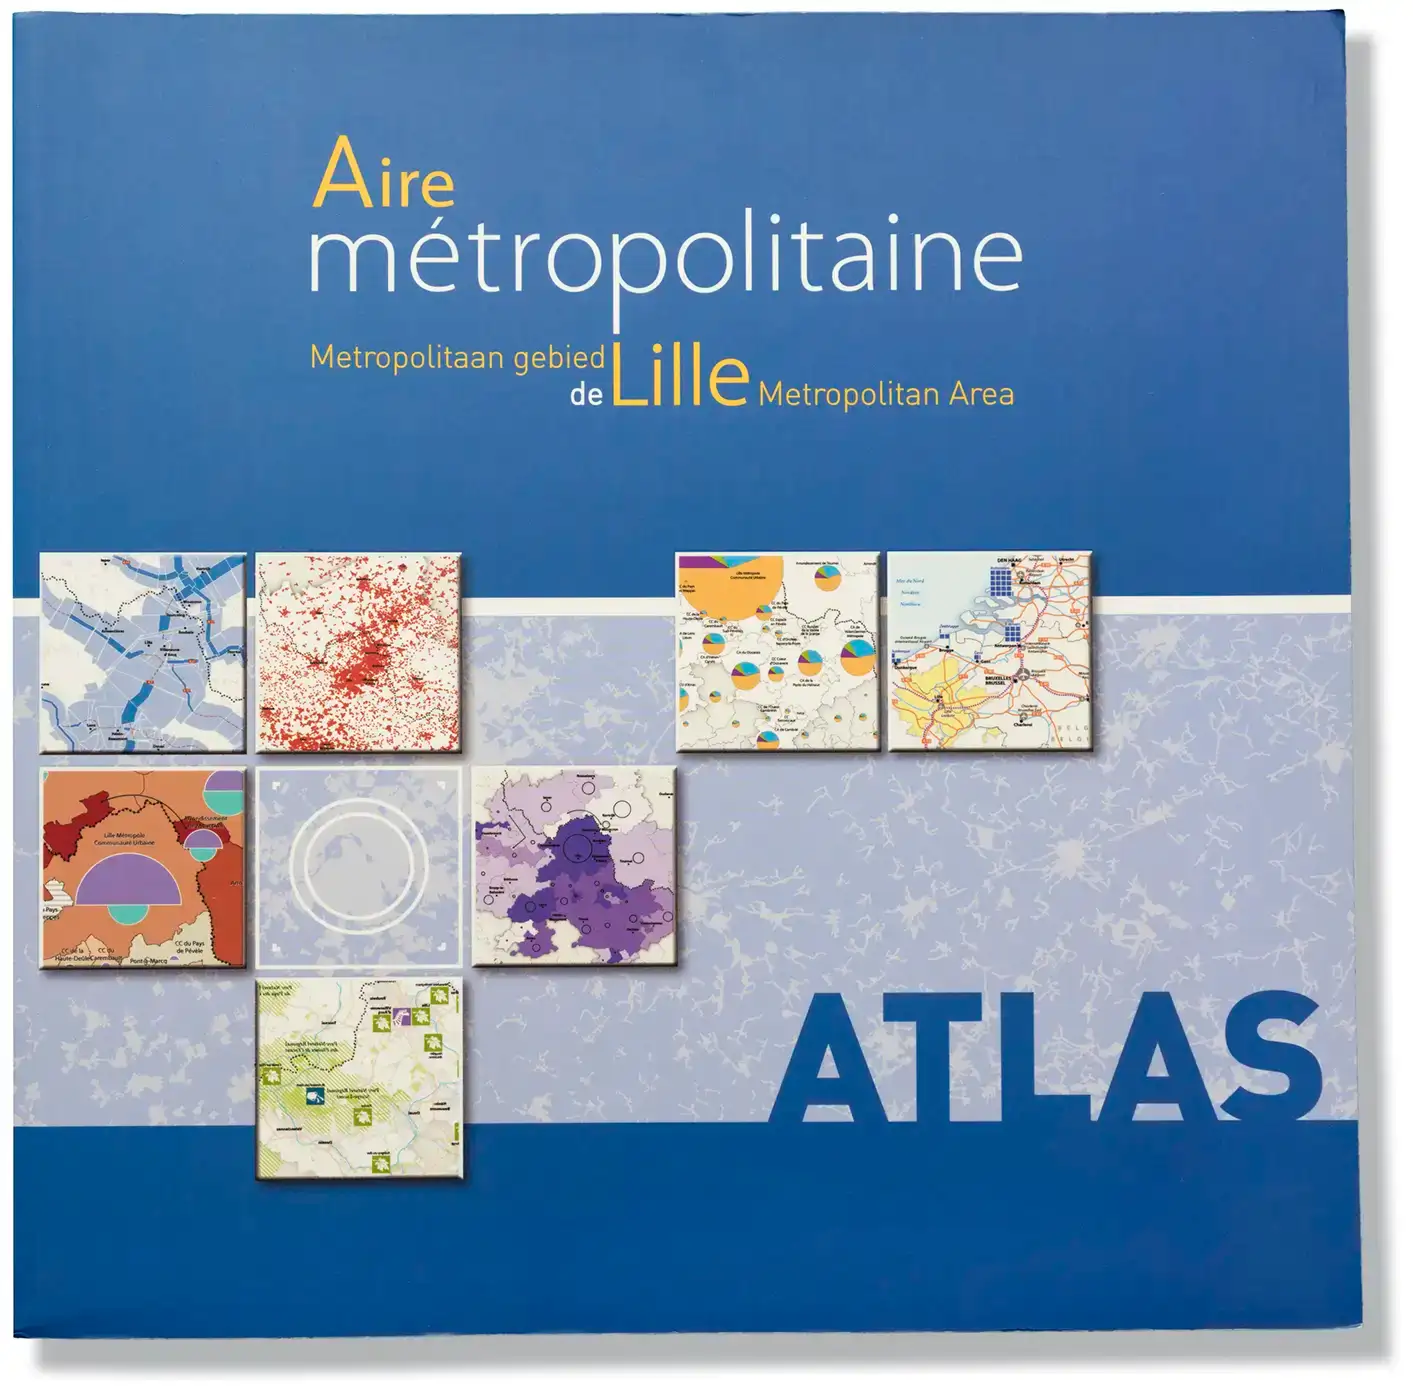 Atlas de l'aire métropolitaine de Lille, photographies de Guillaume Bonnel